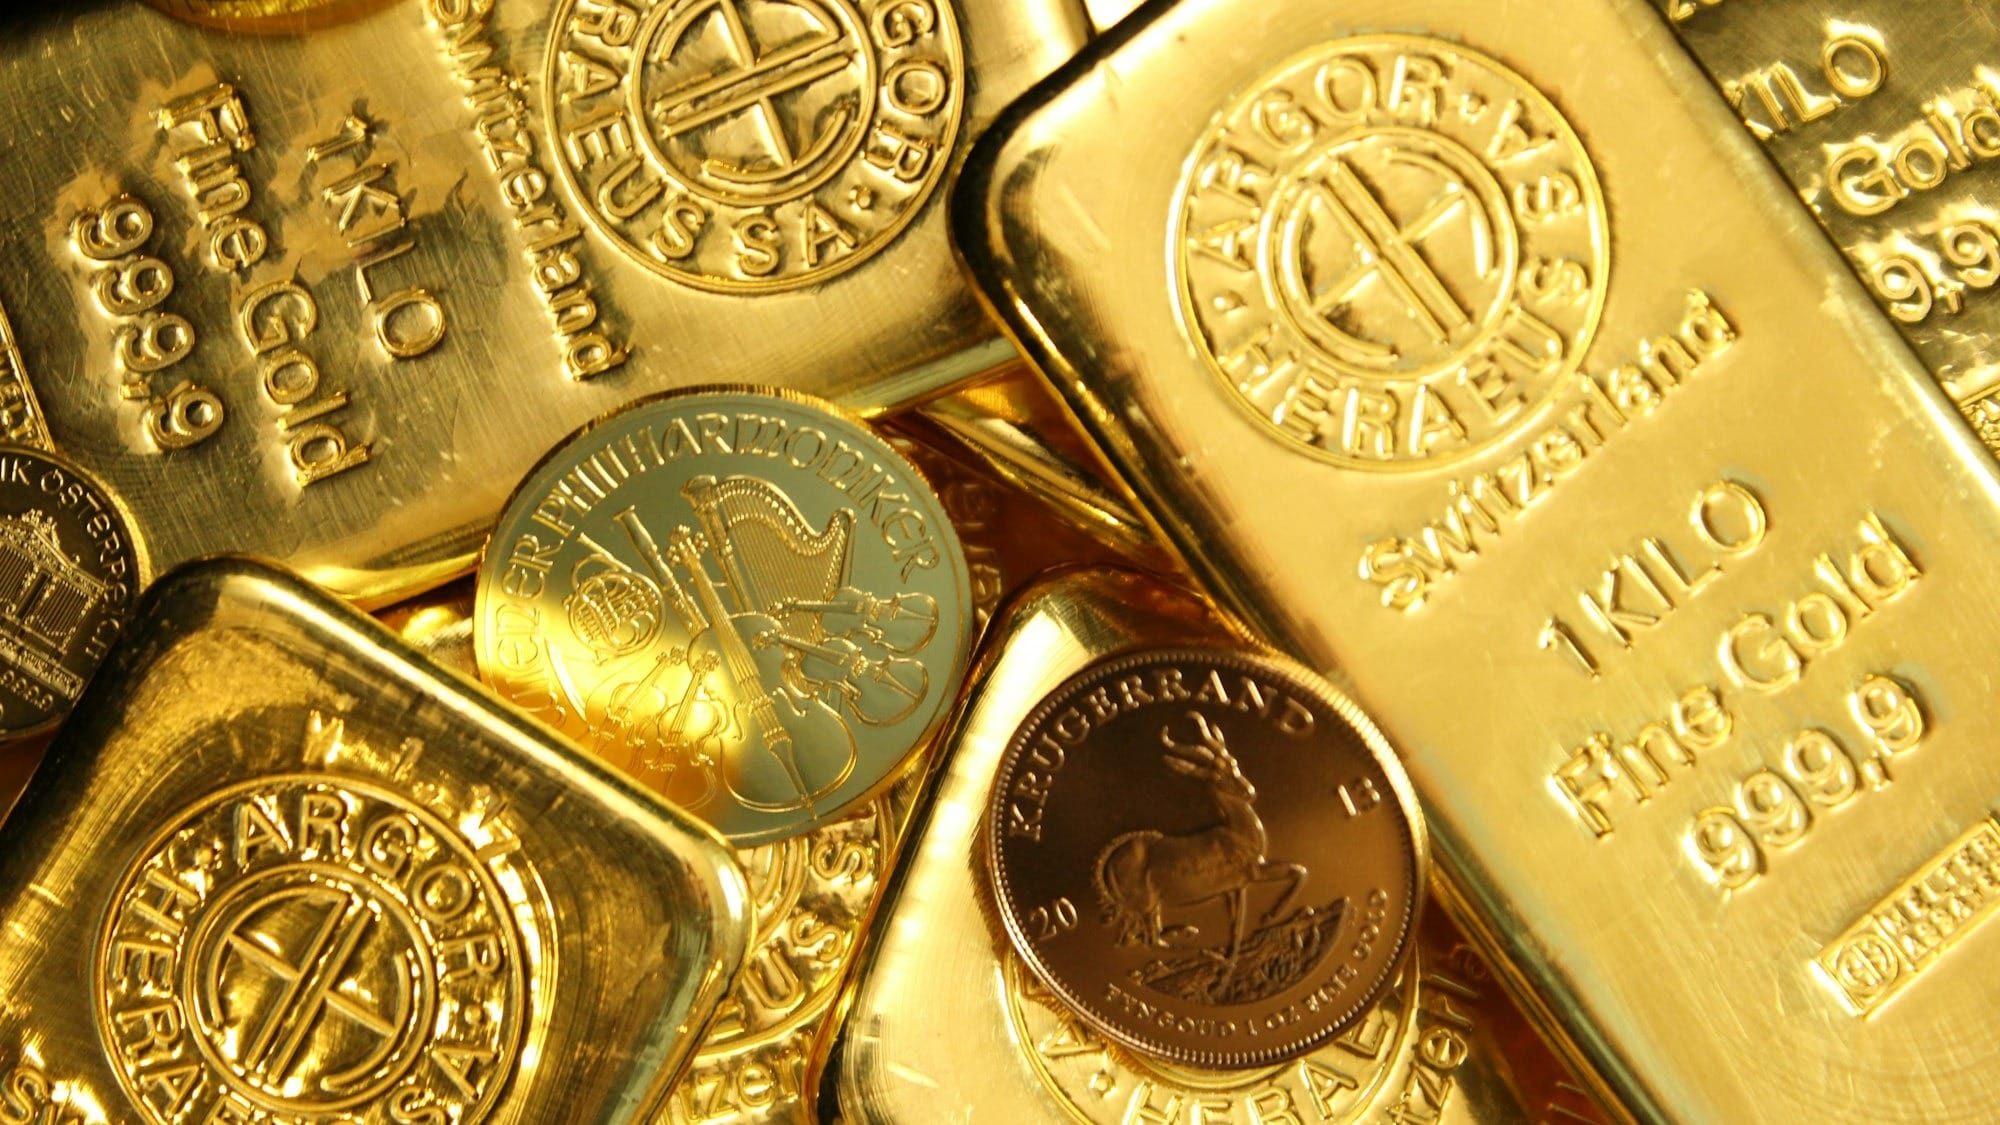 Кыргызстан нарастил запасы золота за год на 31%